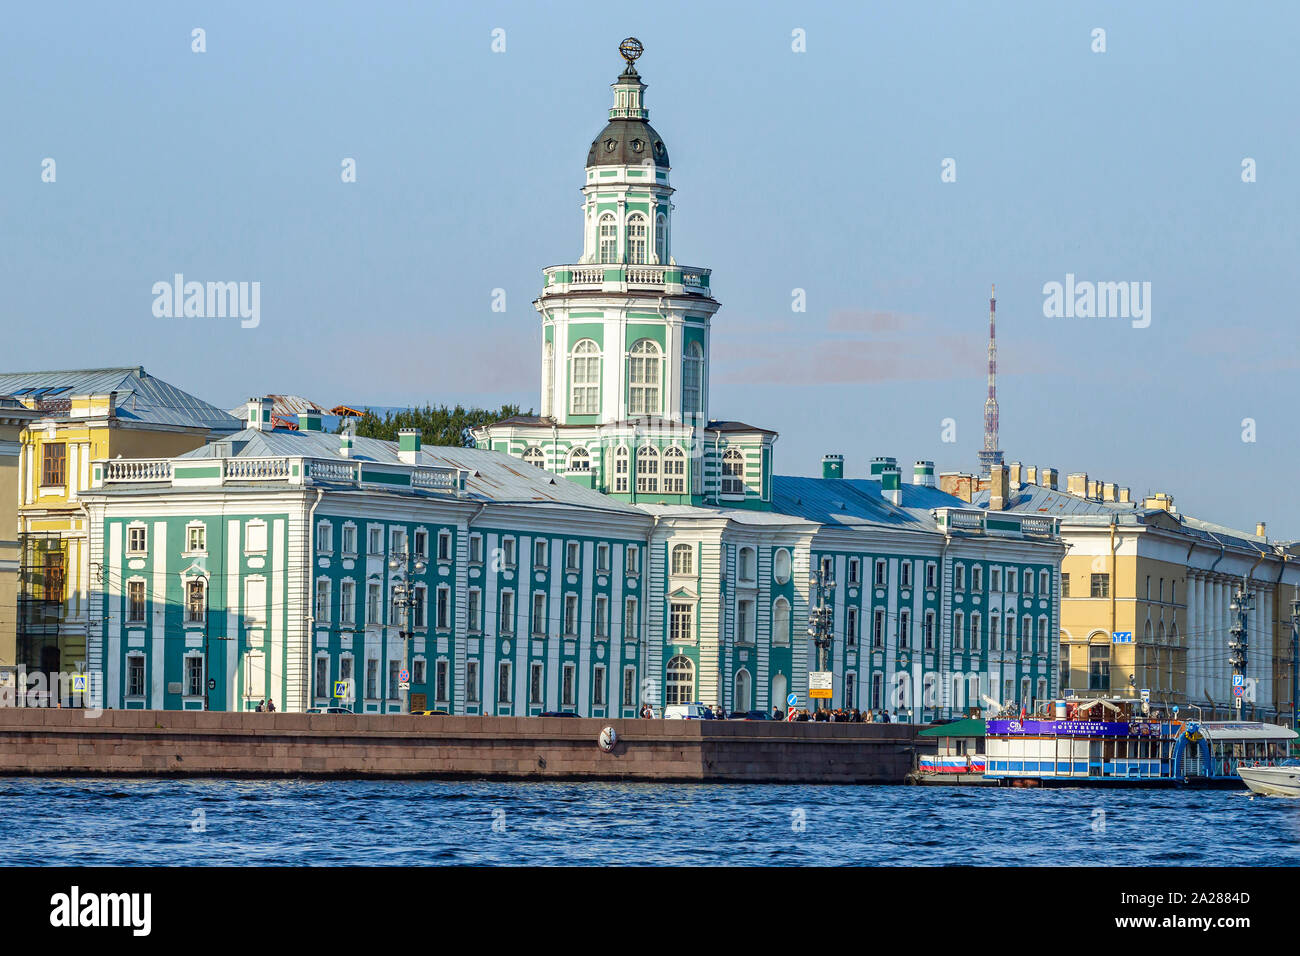 Die kunstkammer Gebäude (Museum) auf der Universität Damm, gesehen von der Newa, St. Petersburg, Russland. Stockfoto